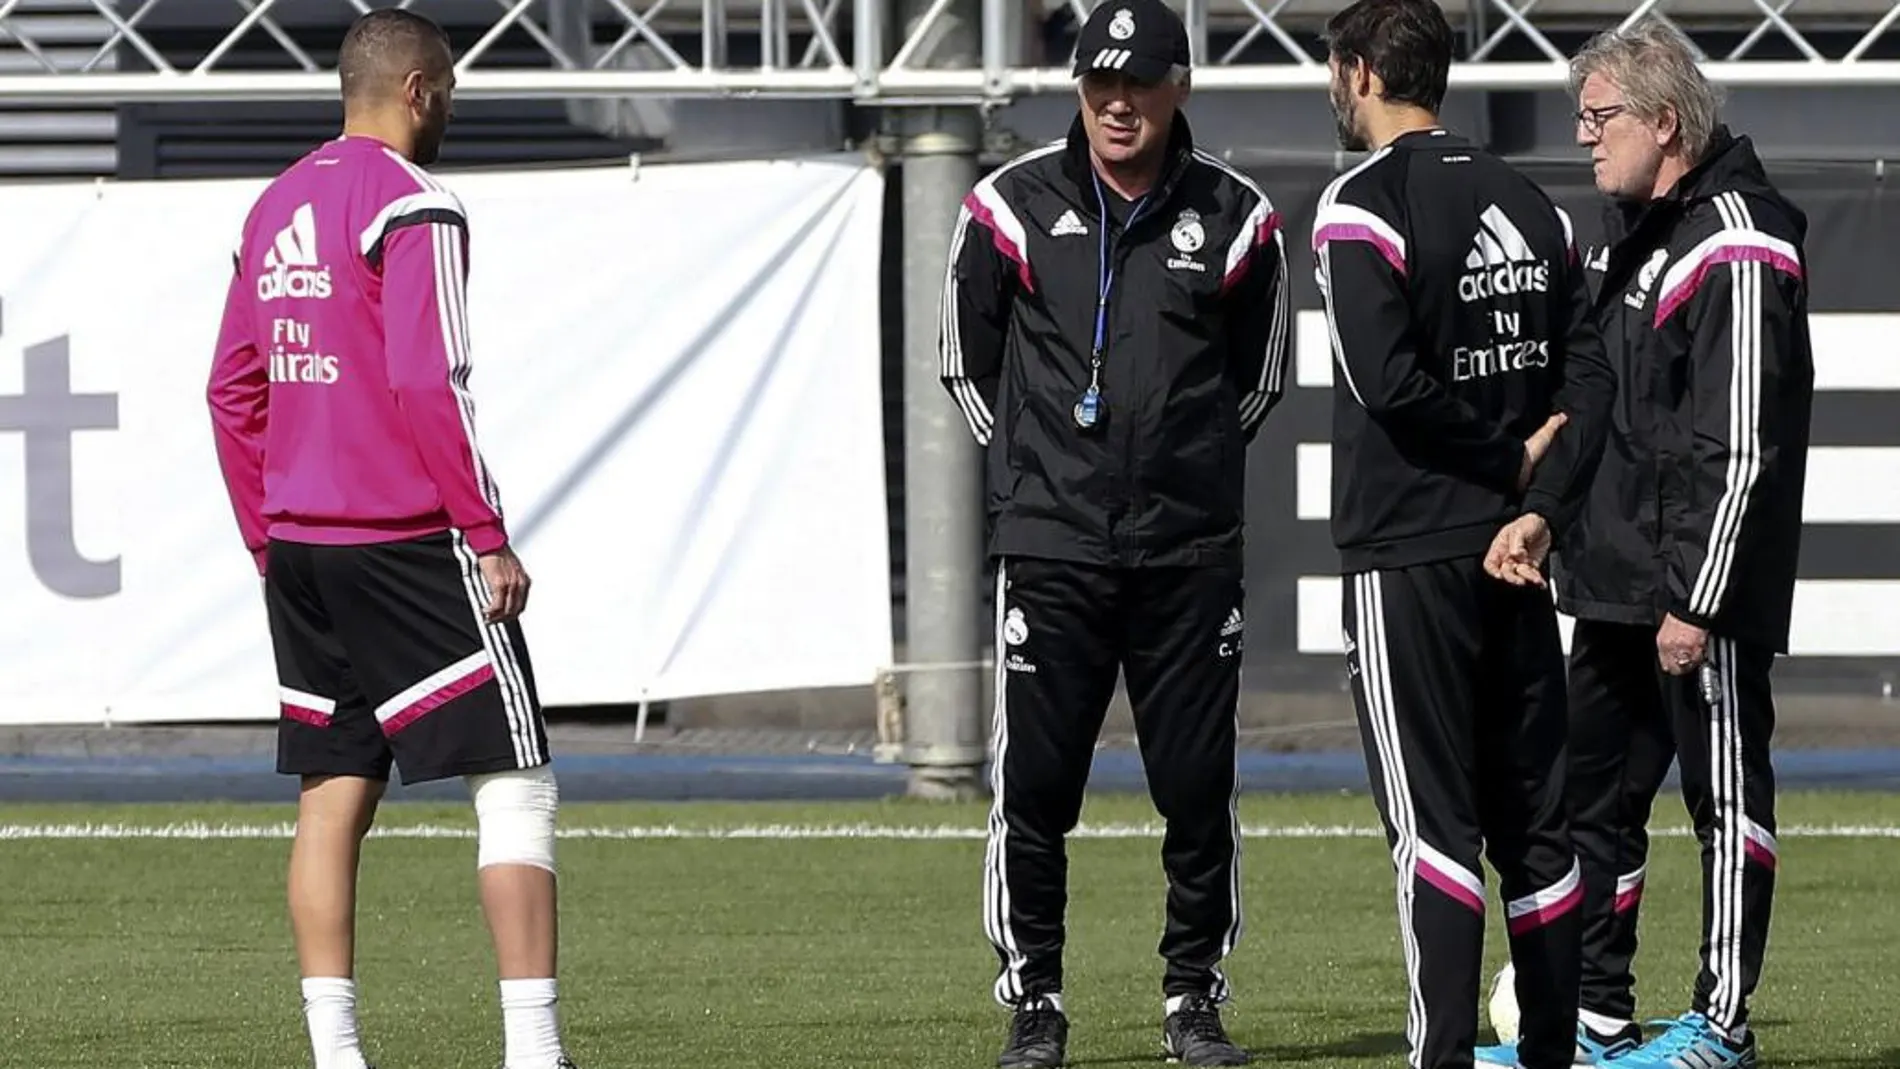 El delantero francés del Real Madrid, Karim Benzema, arrastraba molestias.